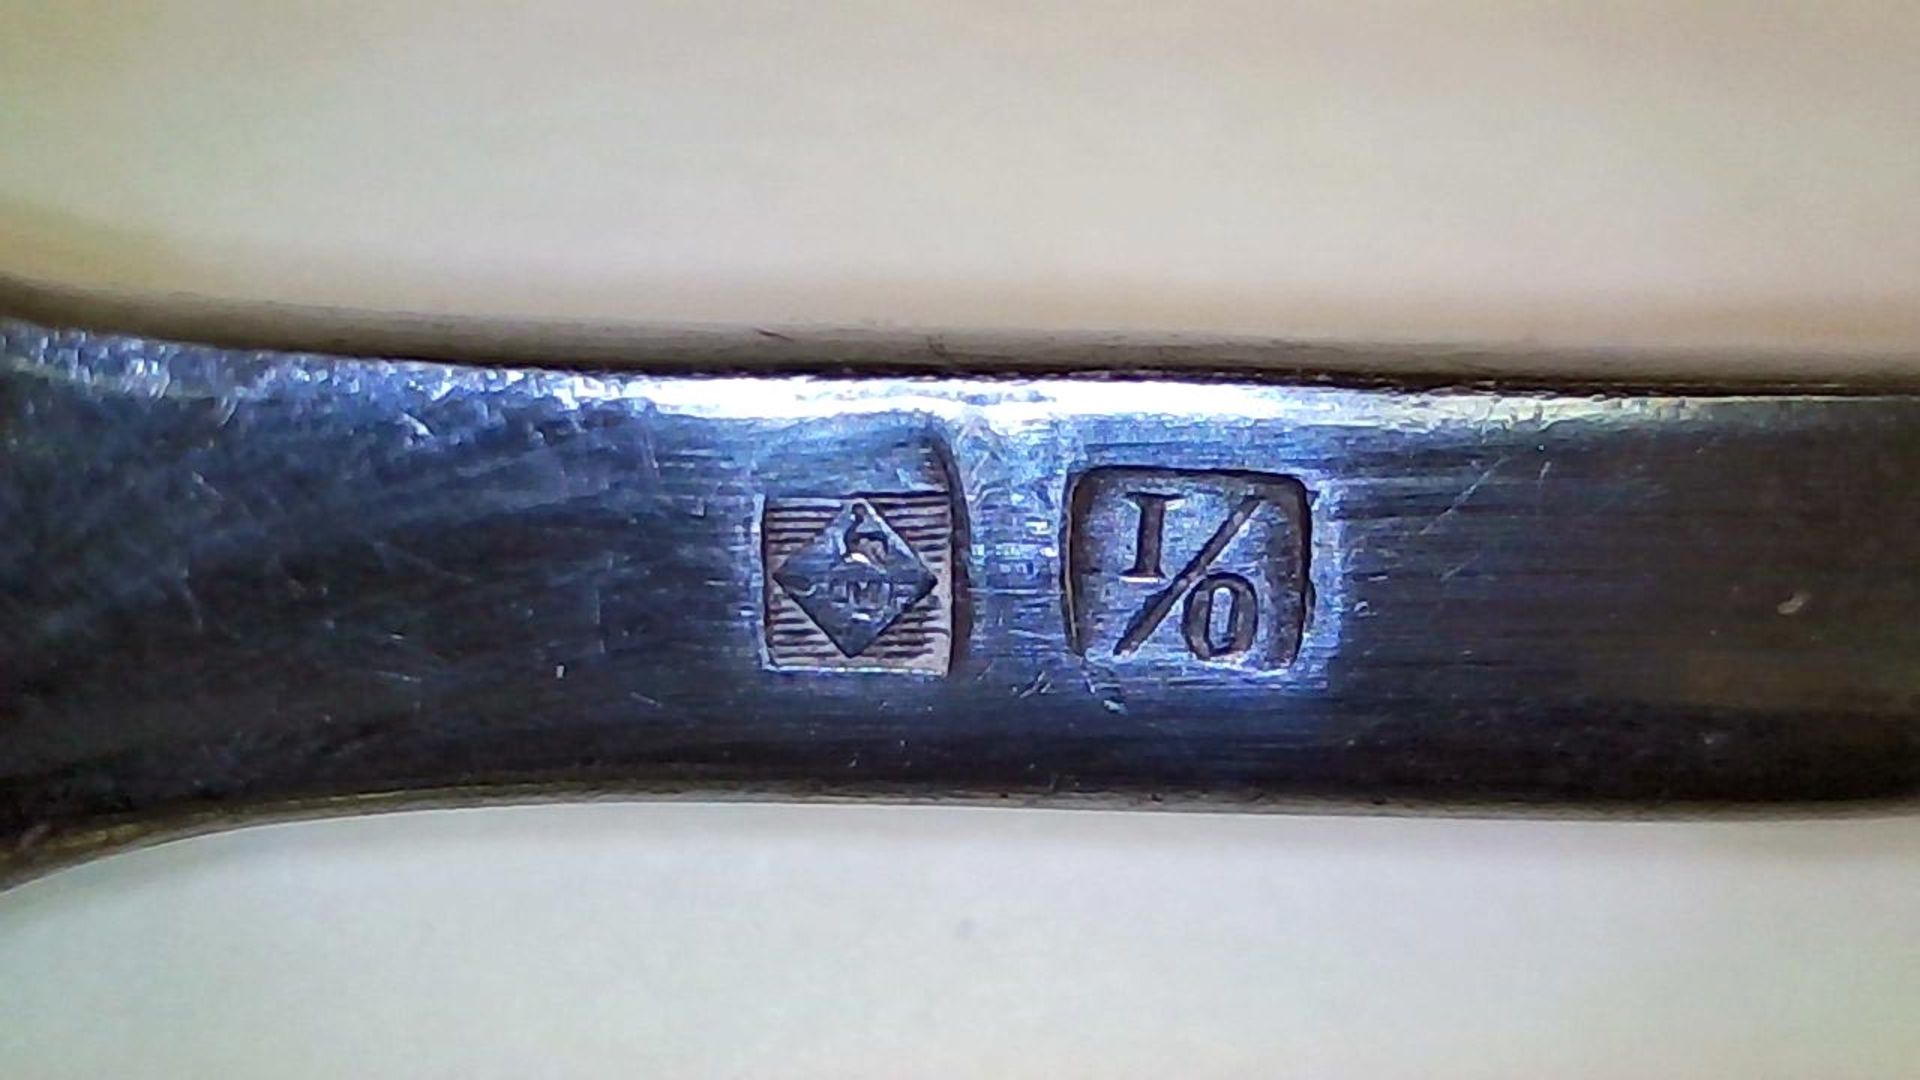 Vorlegegabelum 1910, WMF, Straußenmarke, versilbert, gedrehter Schaft m. Kugelabschluss - Image 2 of 2